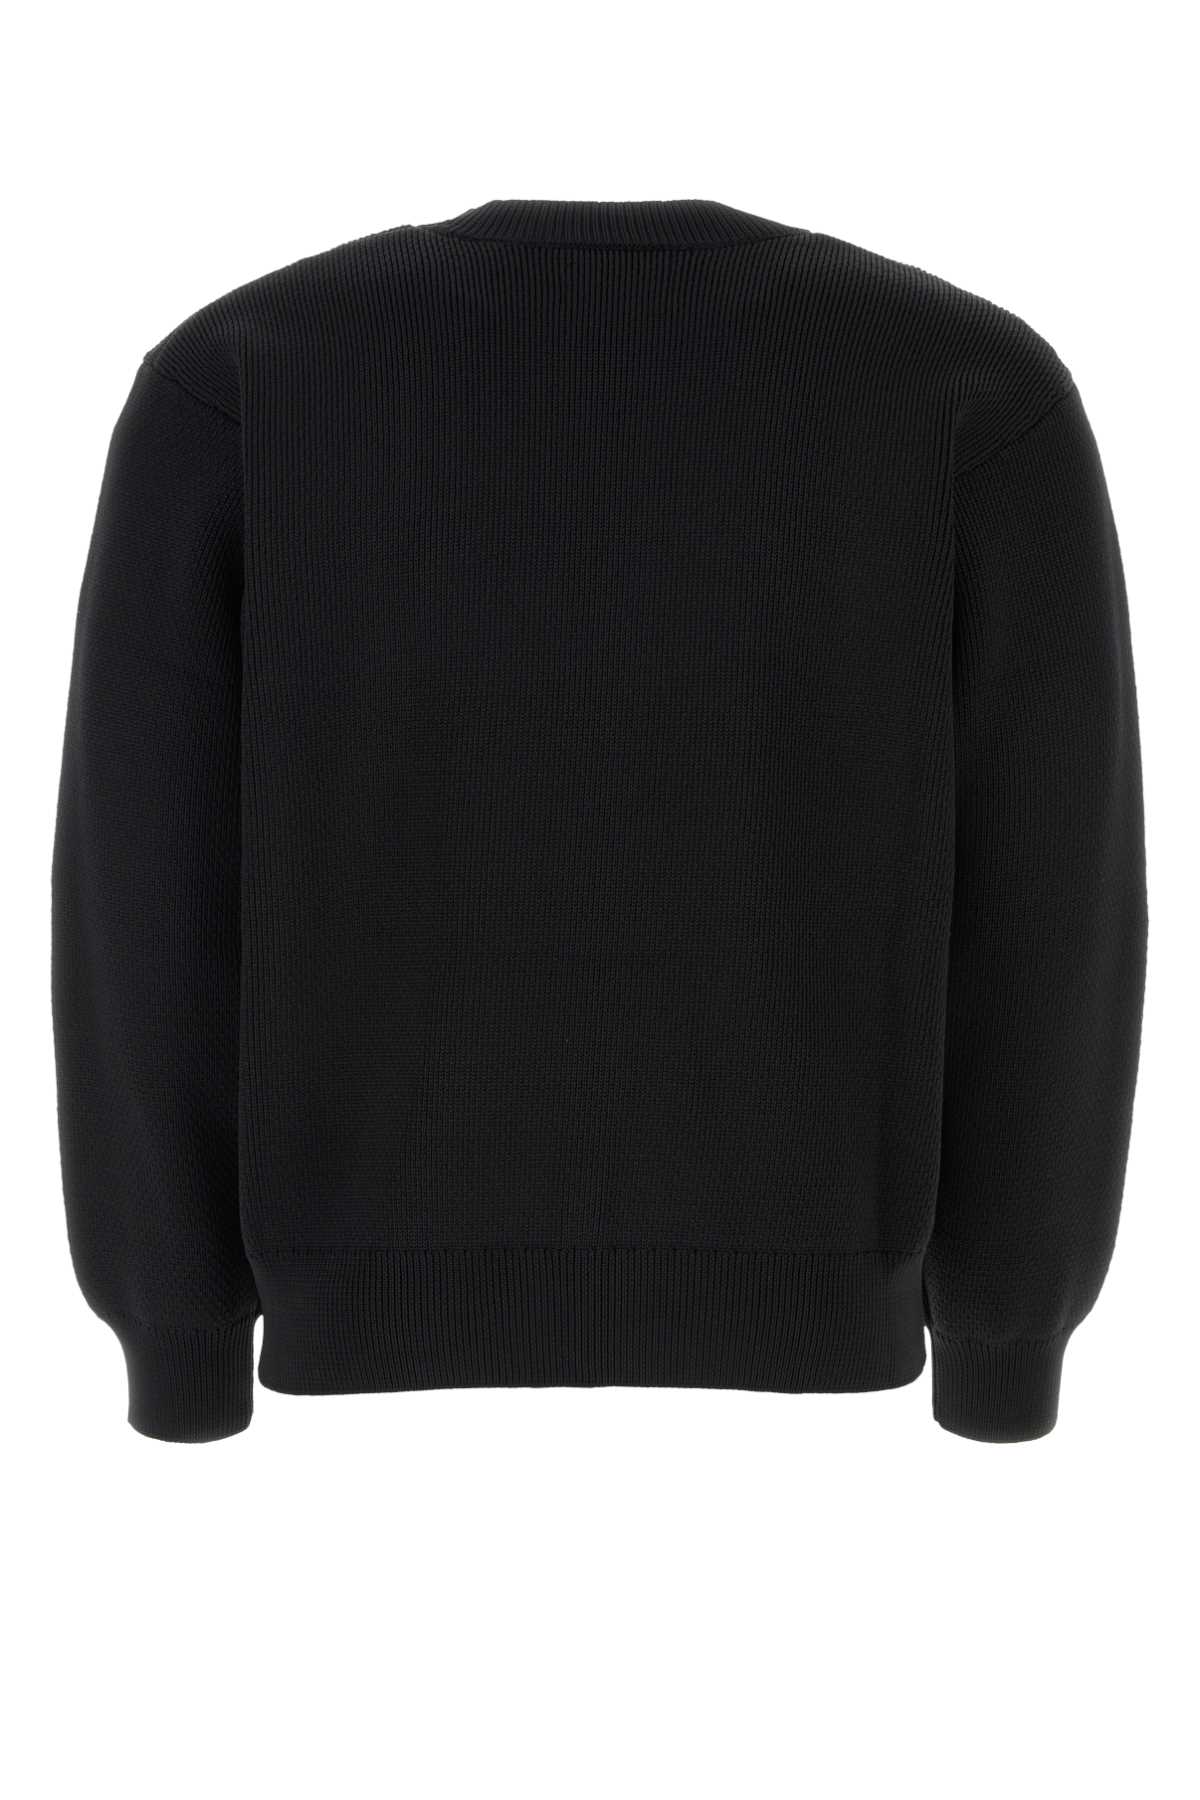 Isabel Marant Black Polyester Blend Ayler Sweater